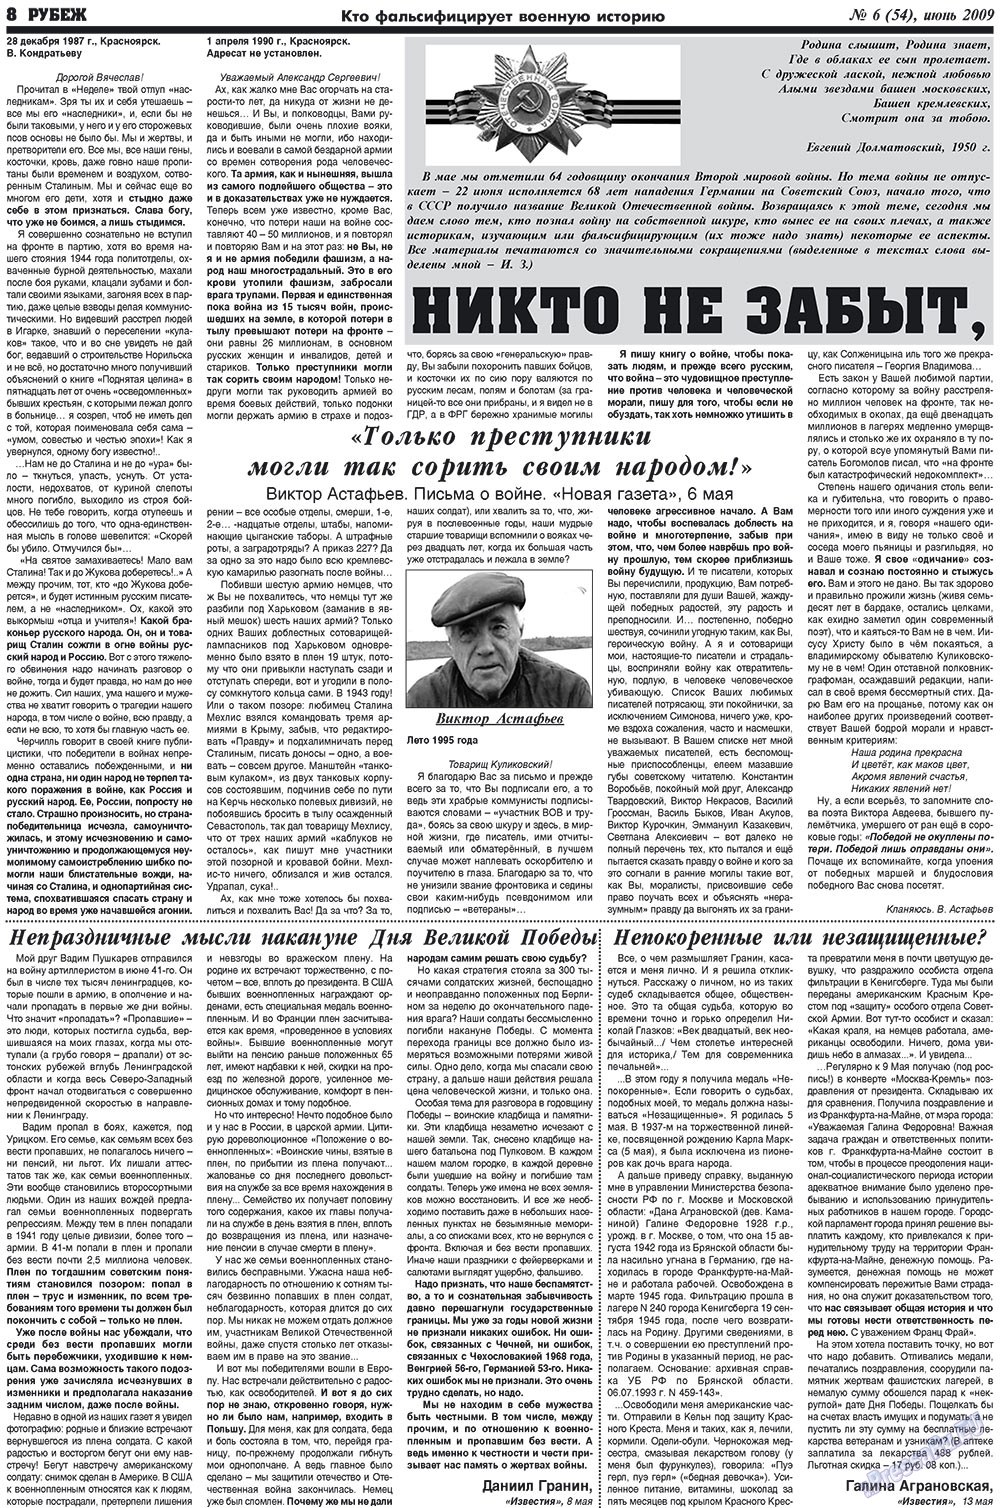 Рубеж (газета). 2009 год, номер 6, стр. 8